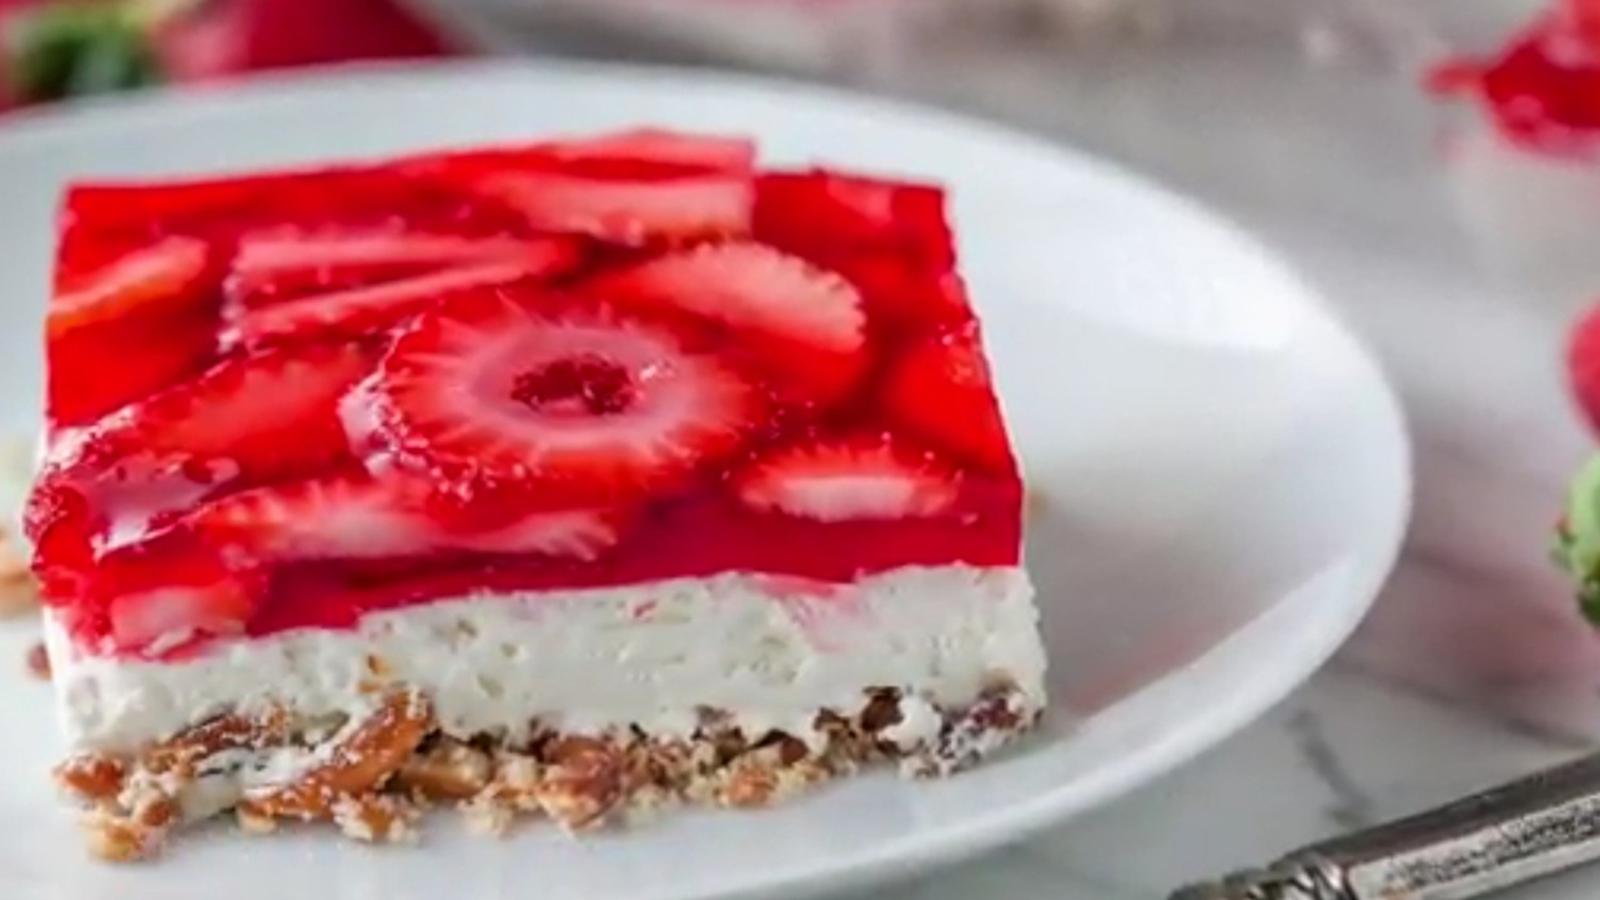 Gâteau ou tarte? Peu importe, ce dessert aux fraises sans cuisson est aussi délicieux que facile à faire!